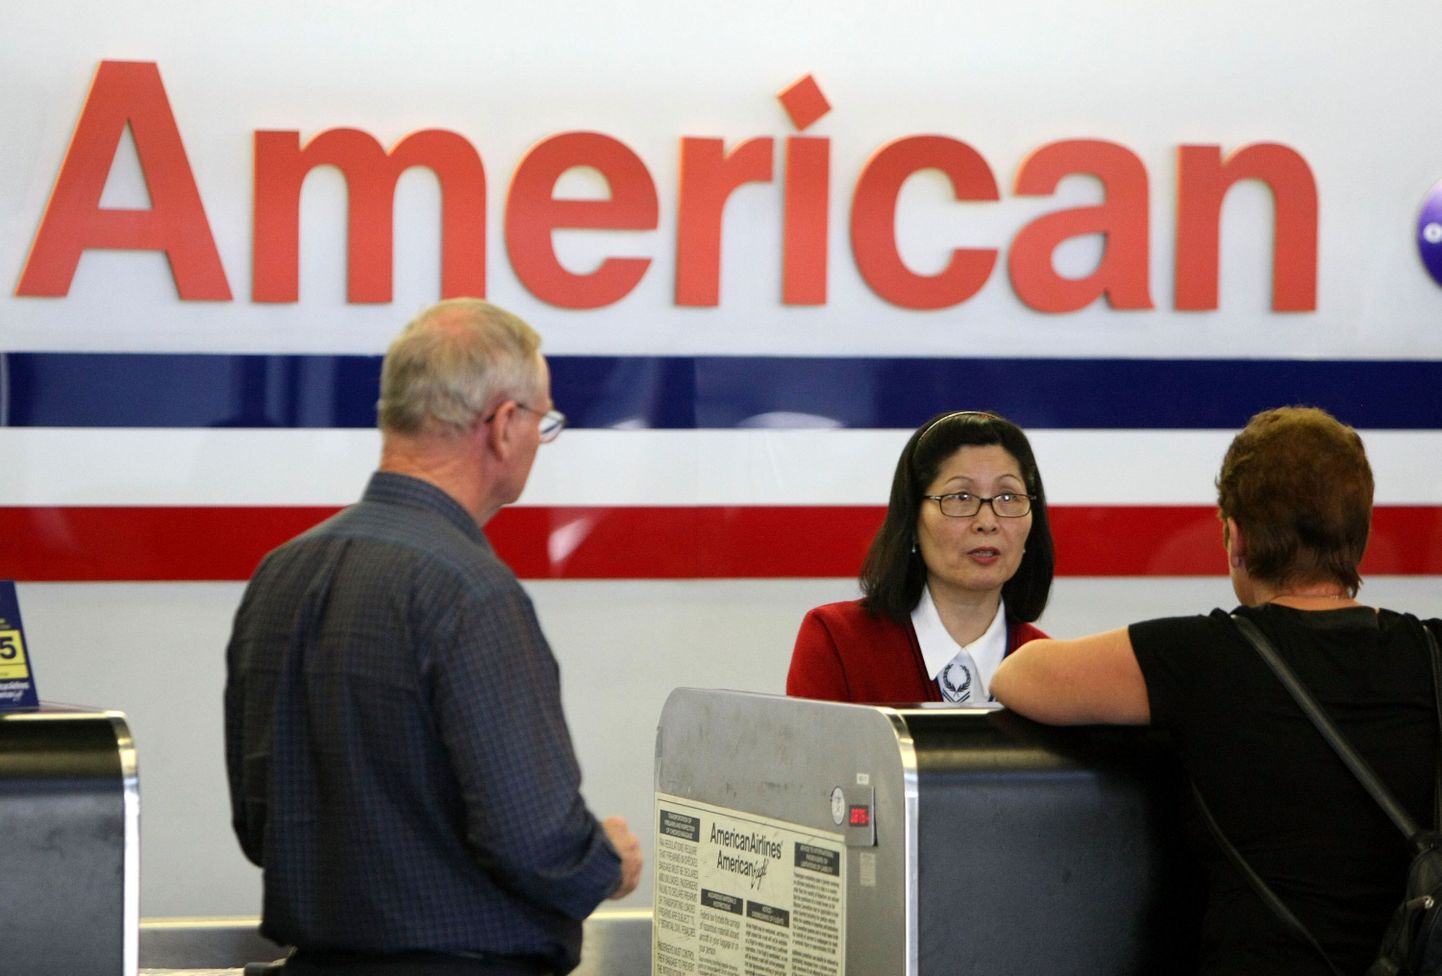 American Airlinesi vea tõttu oli surnukeha neli päeva kadunud